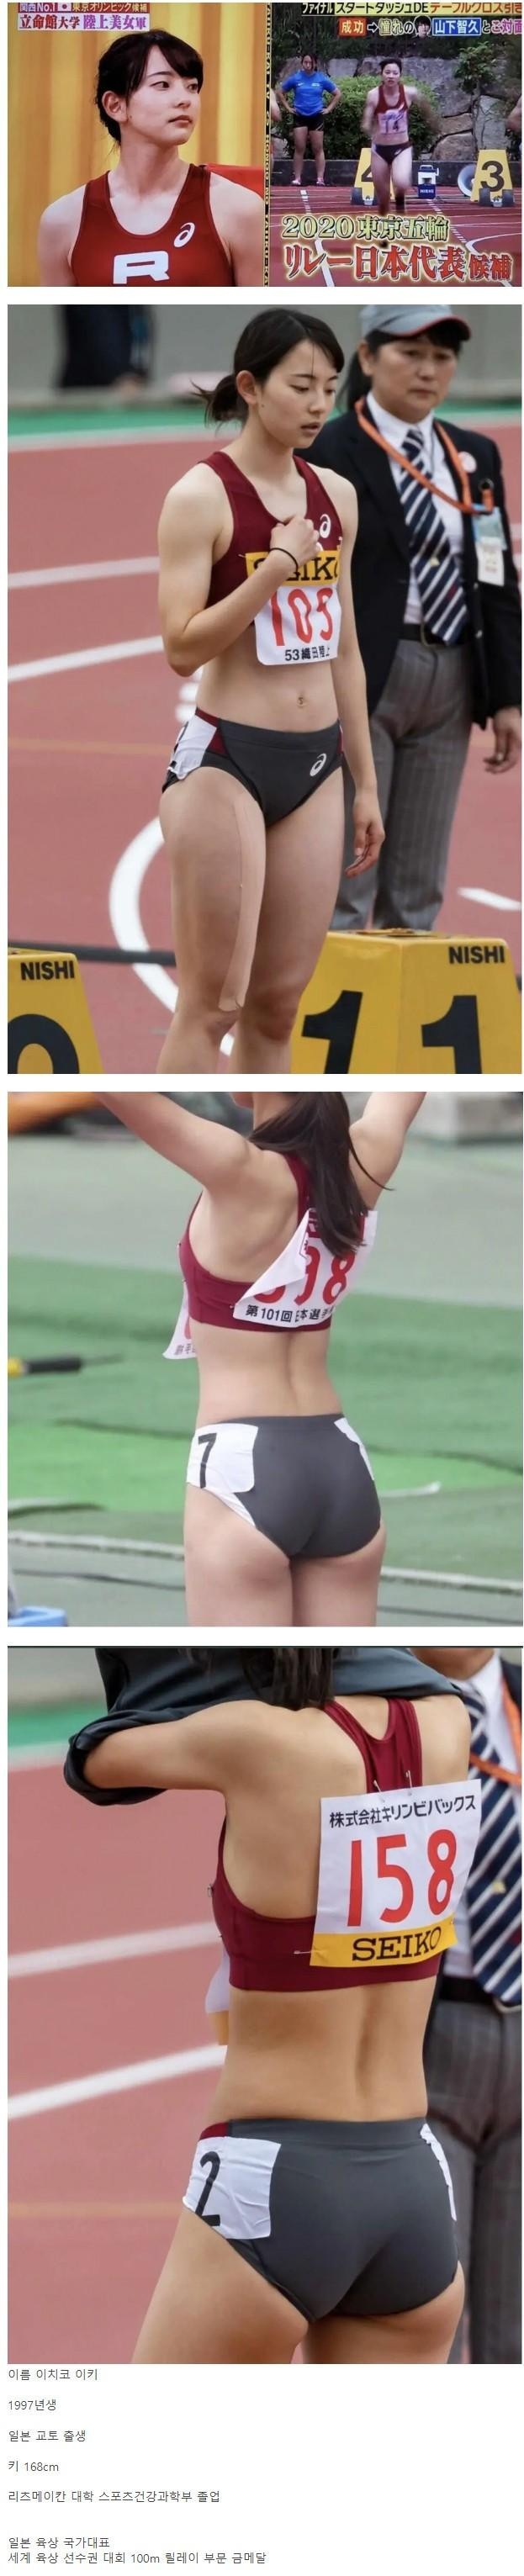 여자 육상 선수.. 탄력넘치는 하체 ㄷㄷ